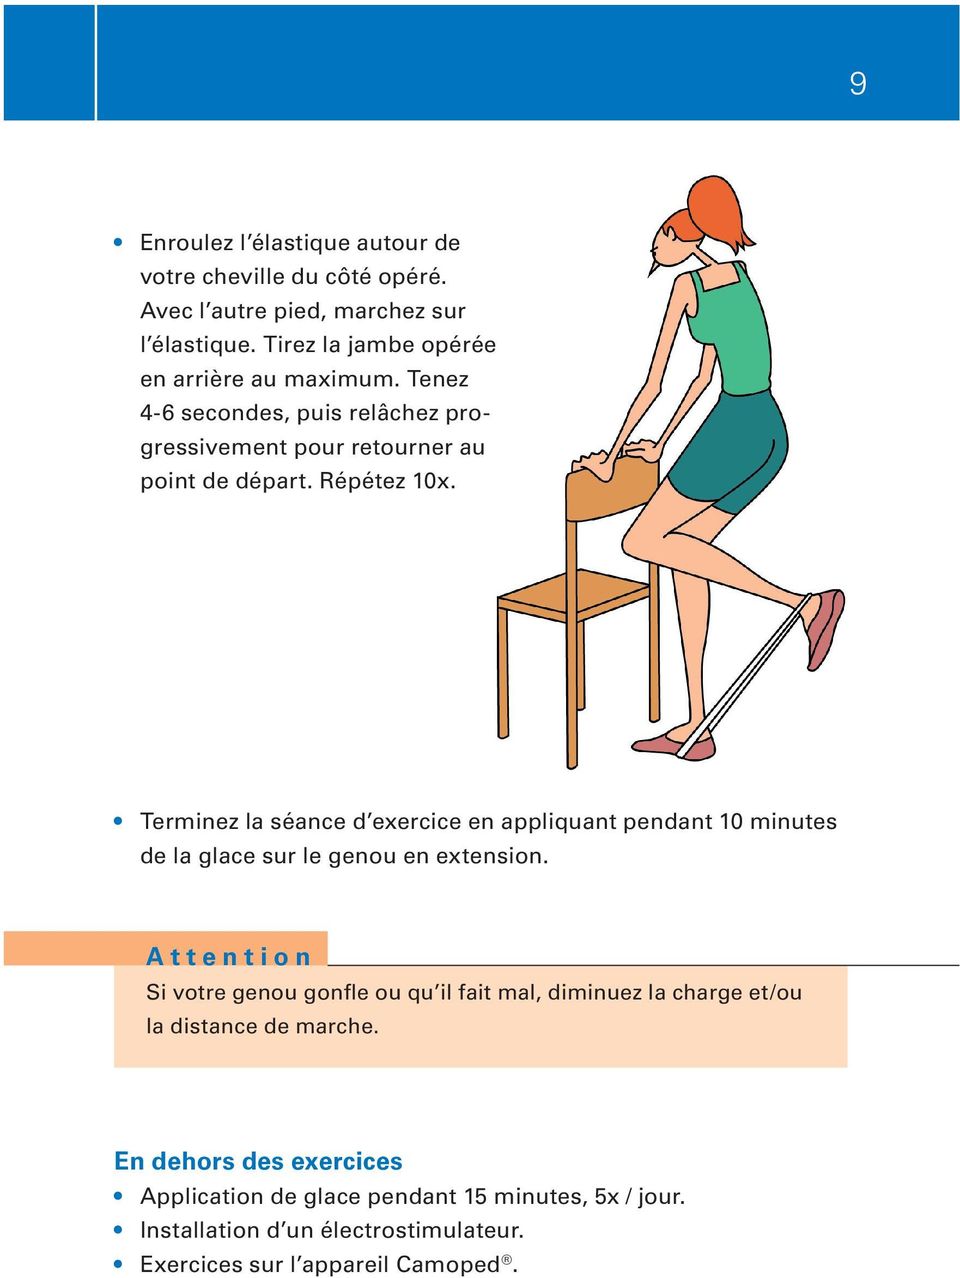 Terminez la séance d exercice en appliquant pendant 10 minutes de la glace sur le genou en extension.